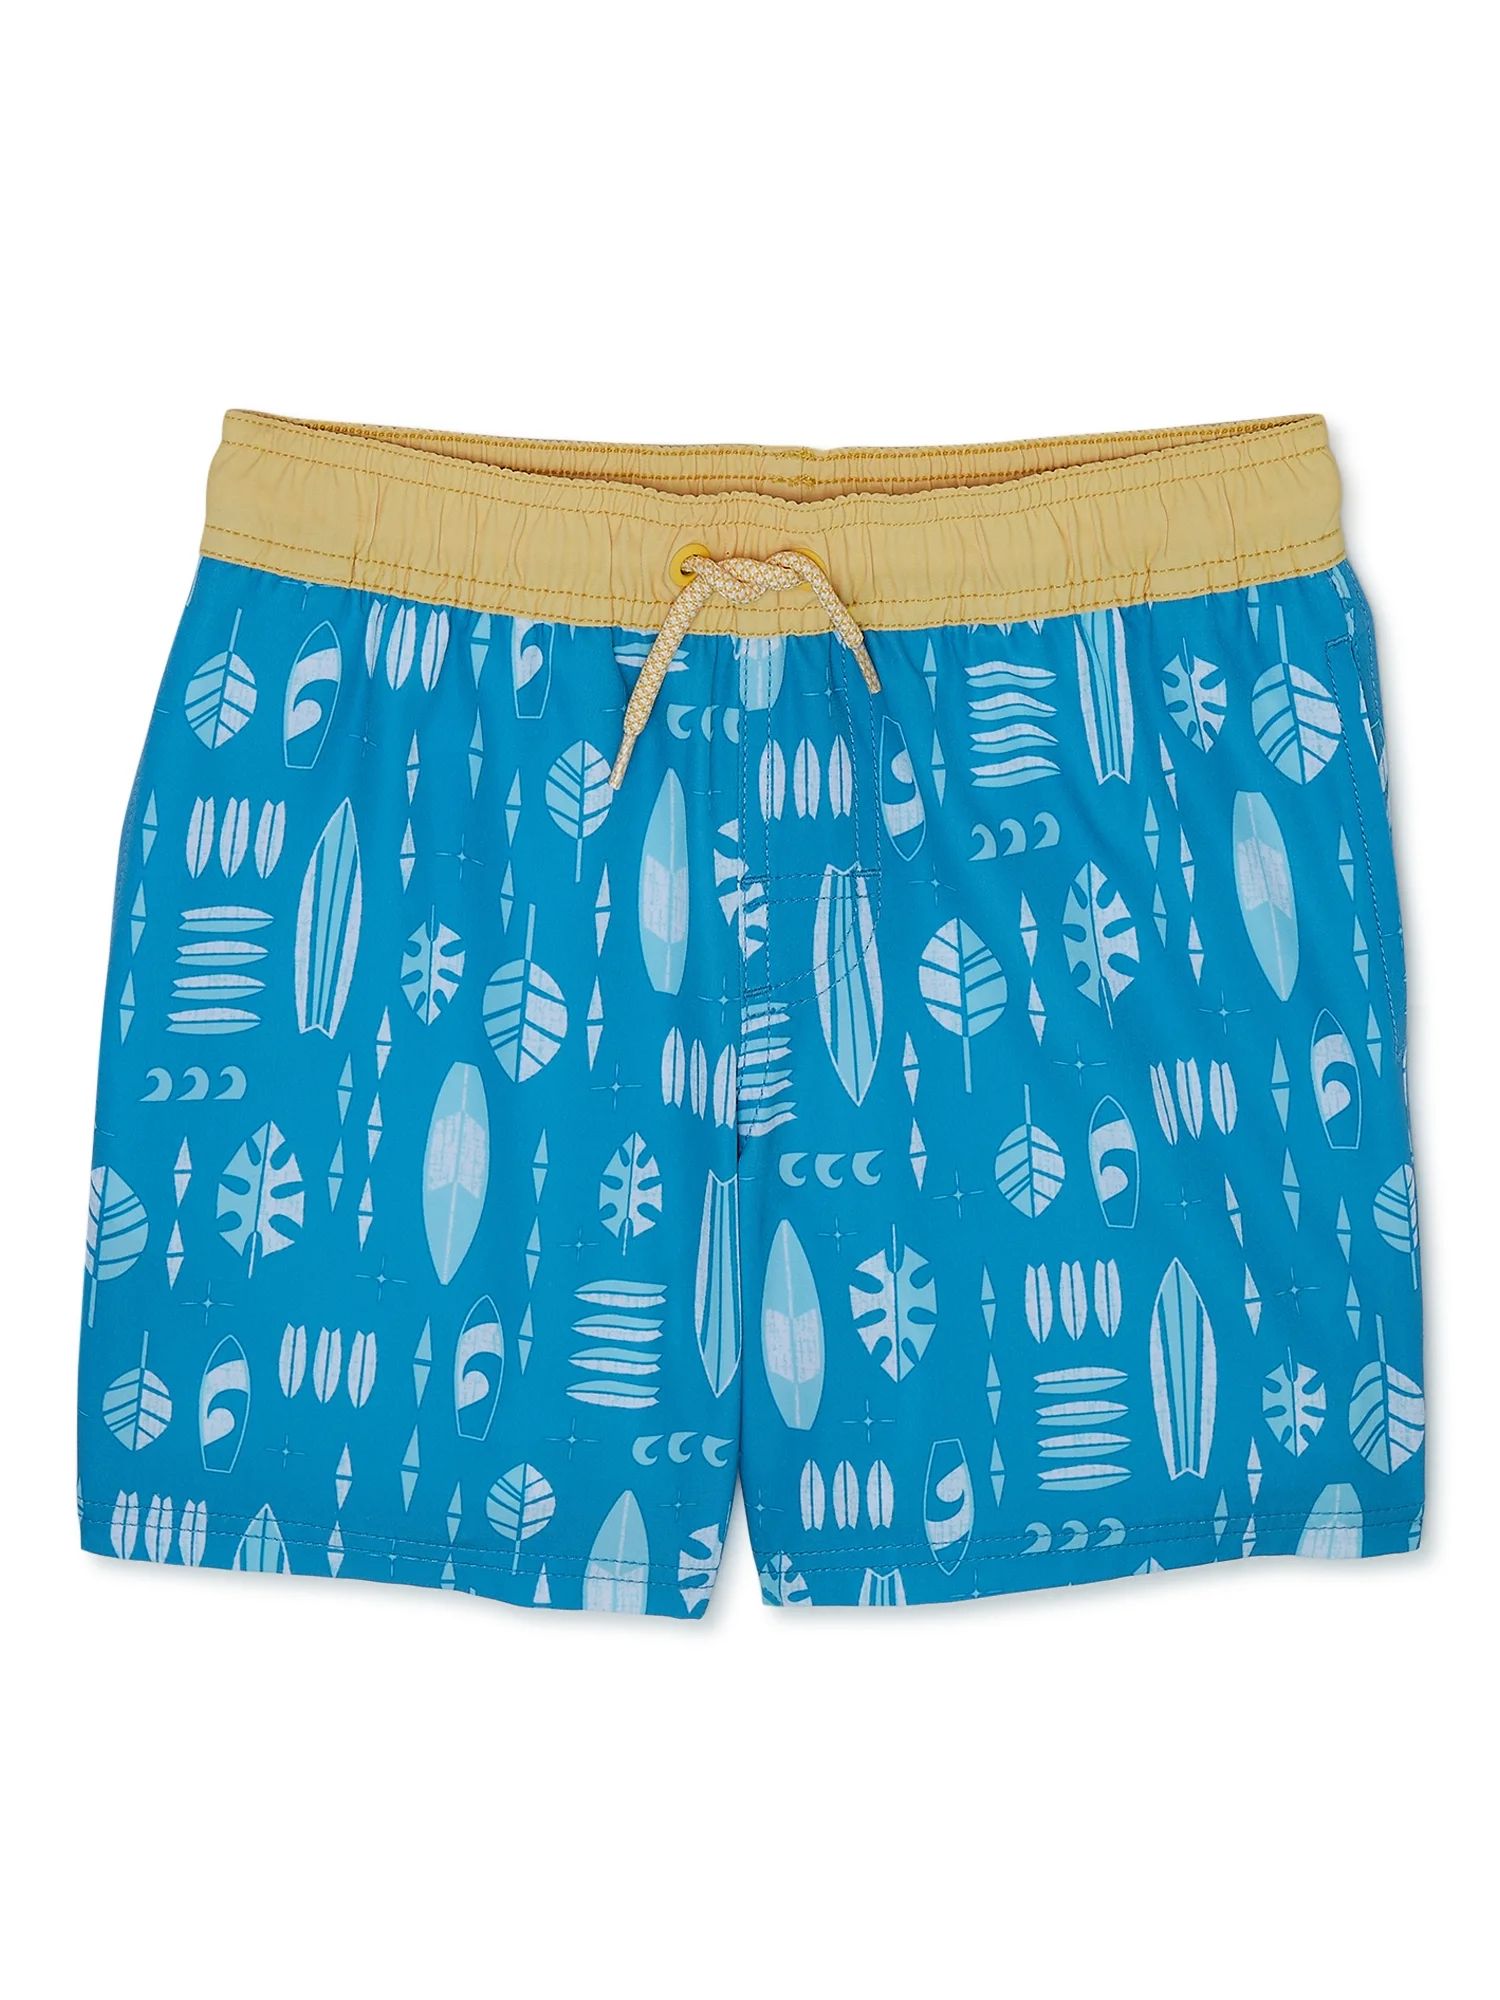 Wonder Nation Boys Swim Shorts with UPF 50+ Protection, Sizes 4-18 & Husky | Walmart (US)